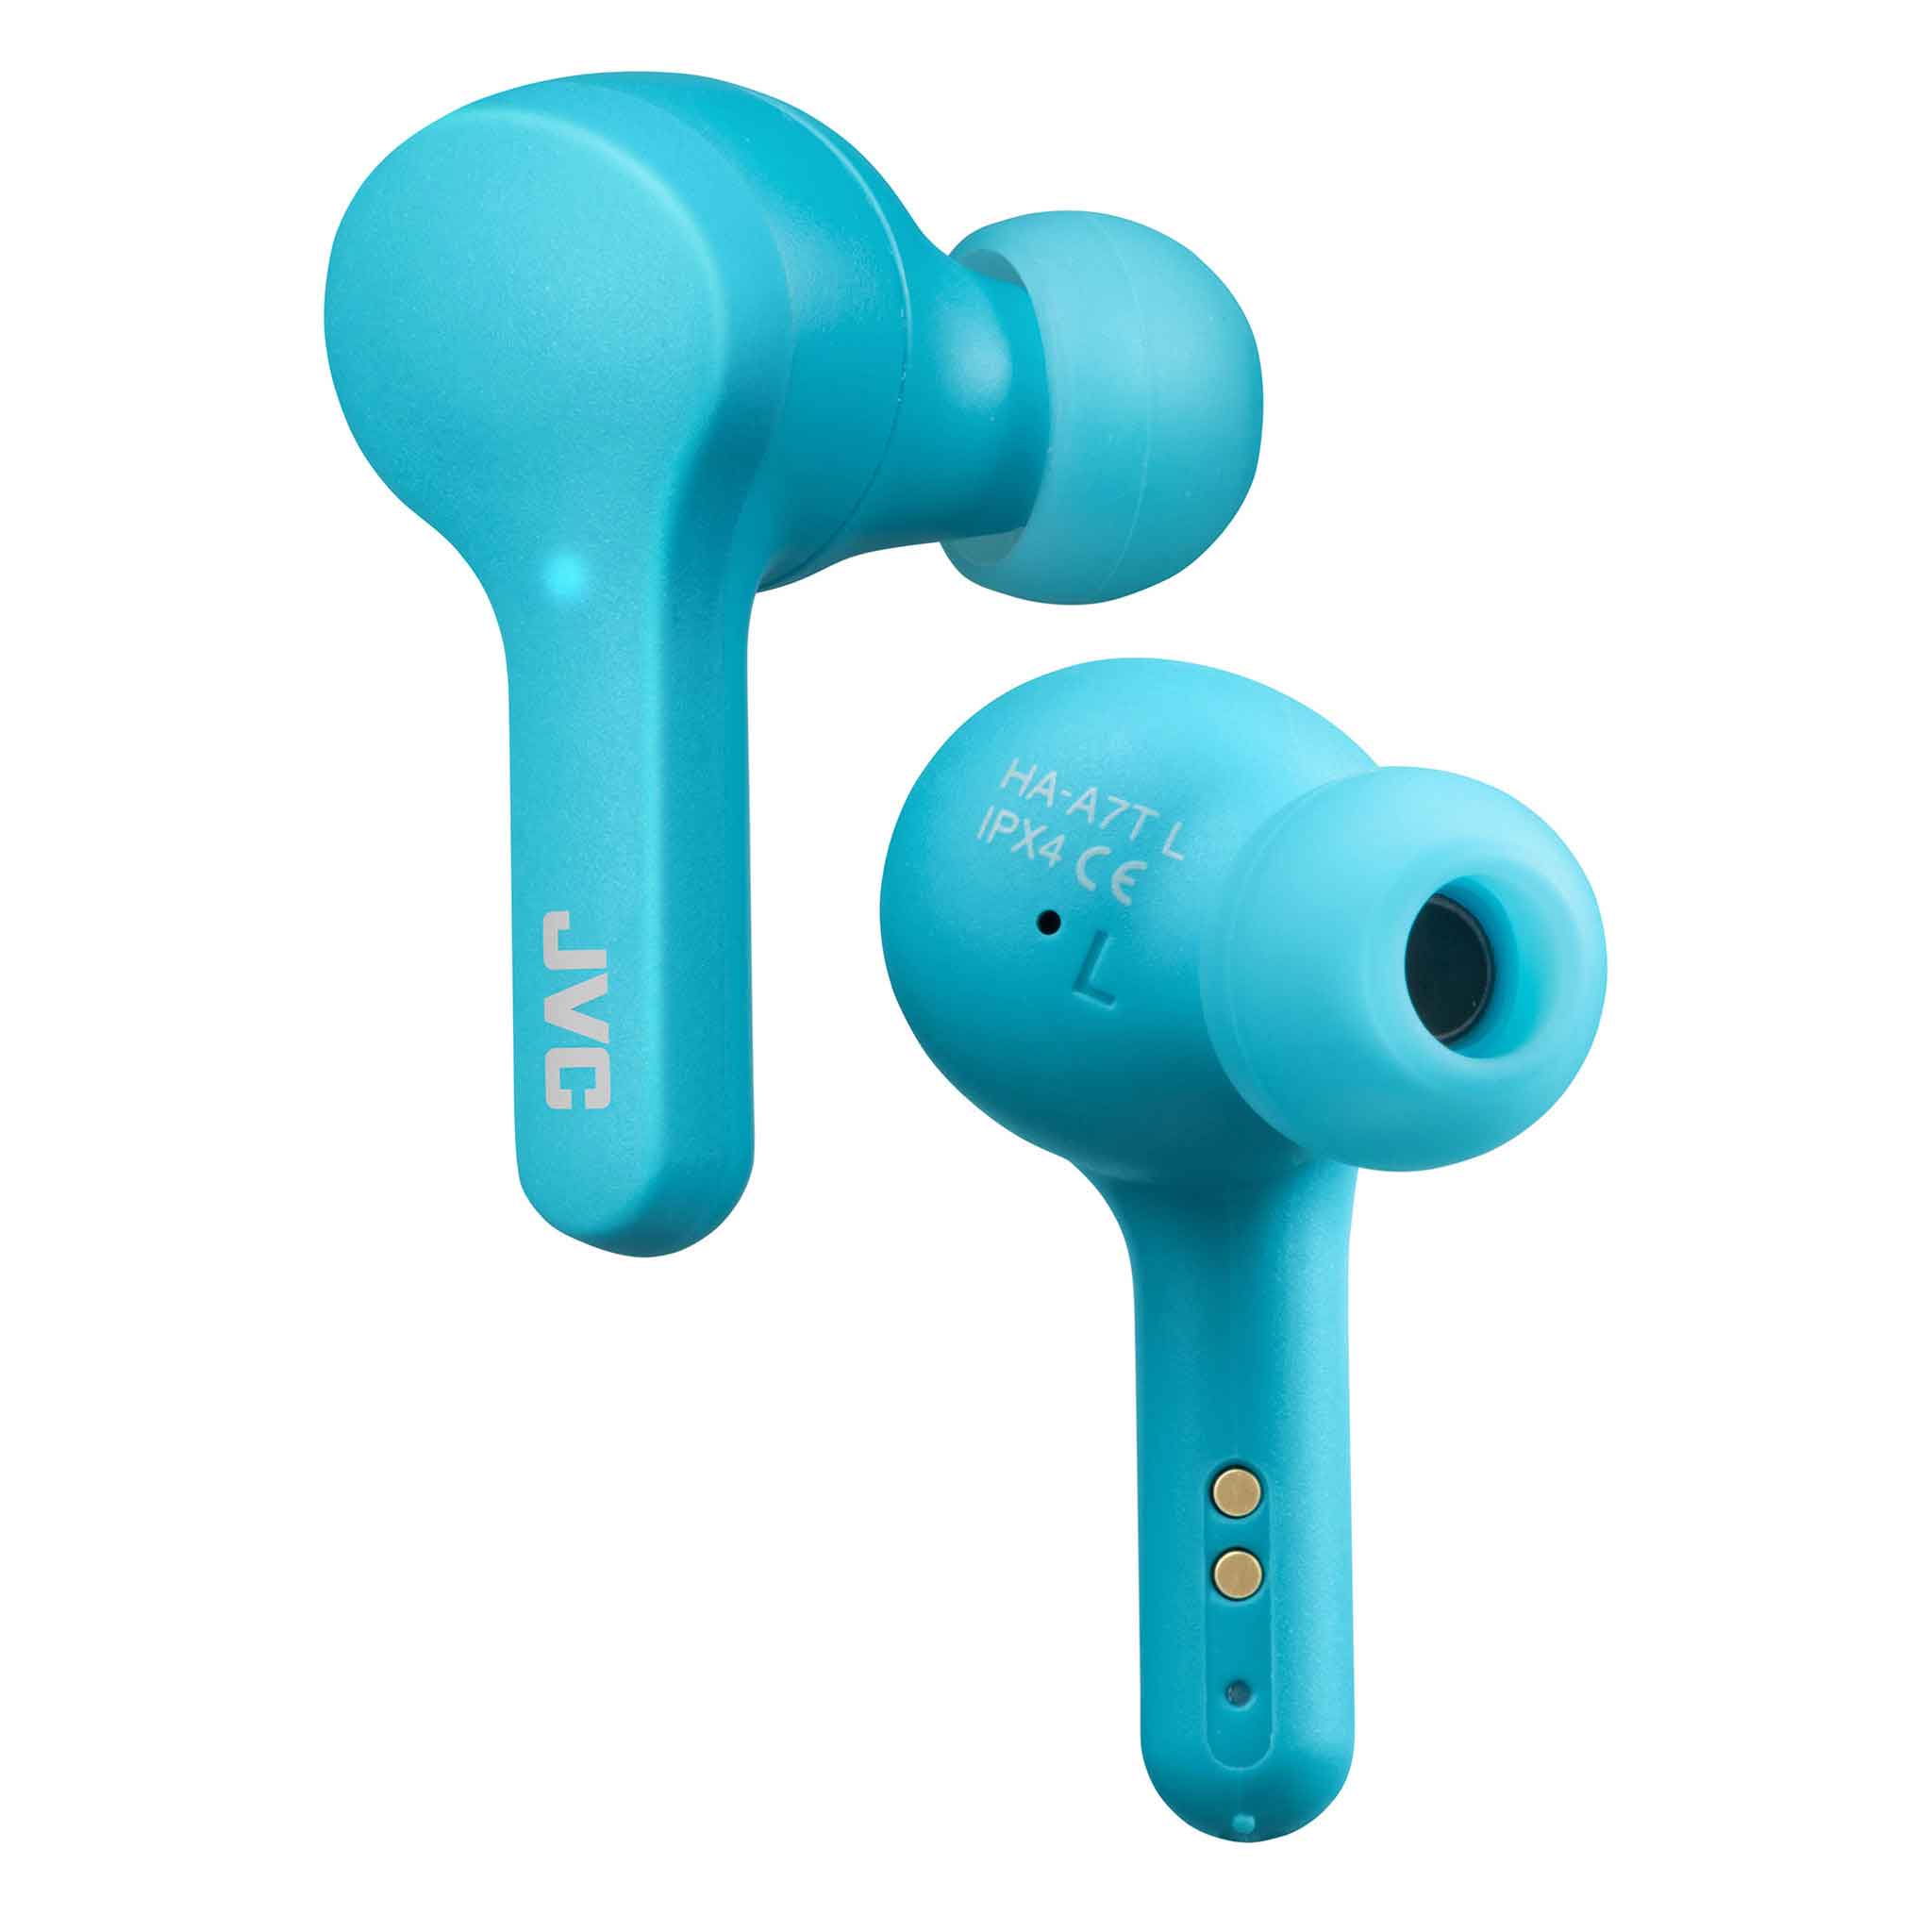 Gumy true wireless earphones HA-A7T in soda blue